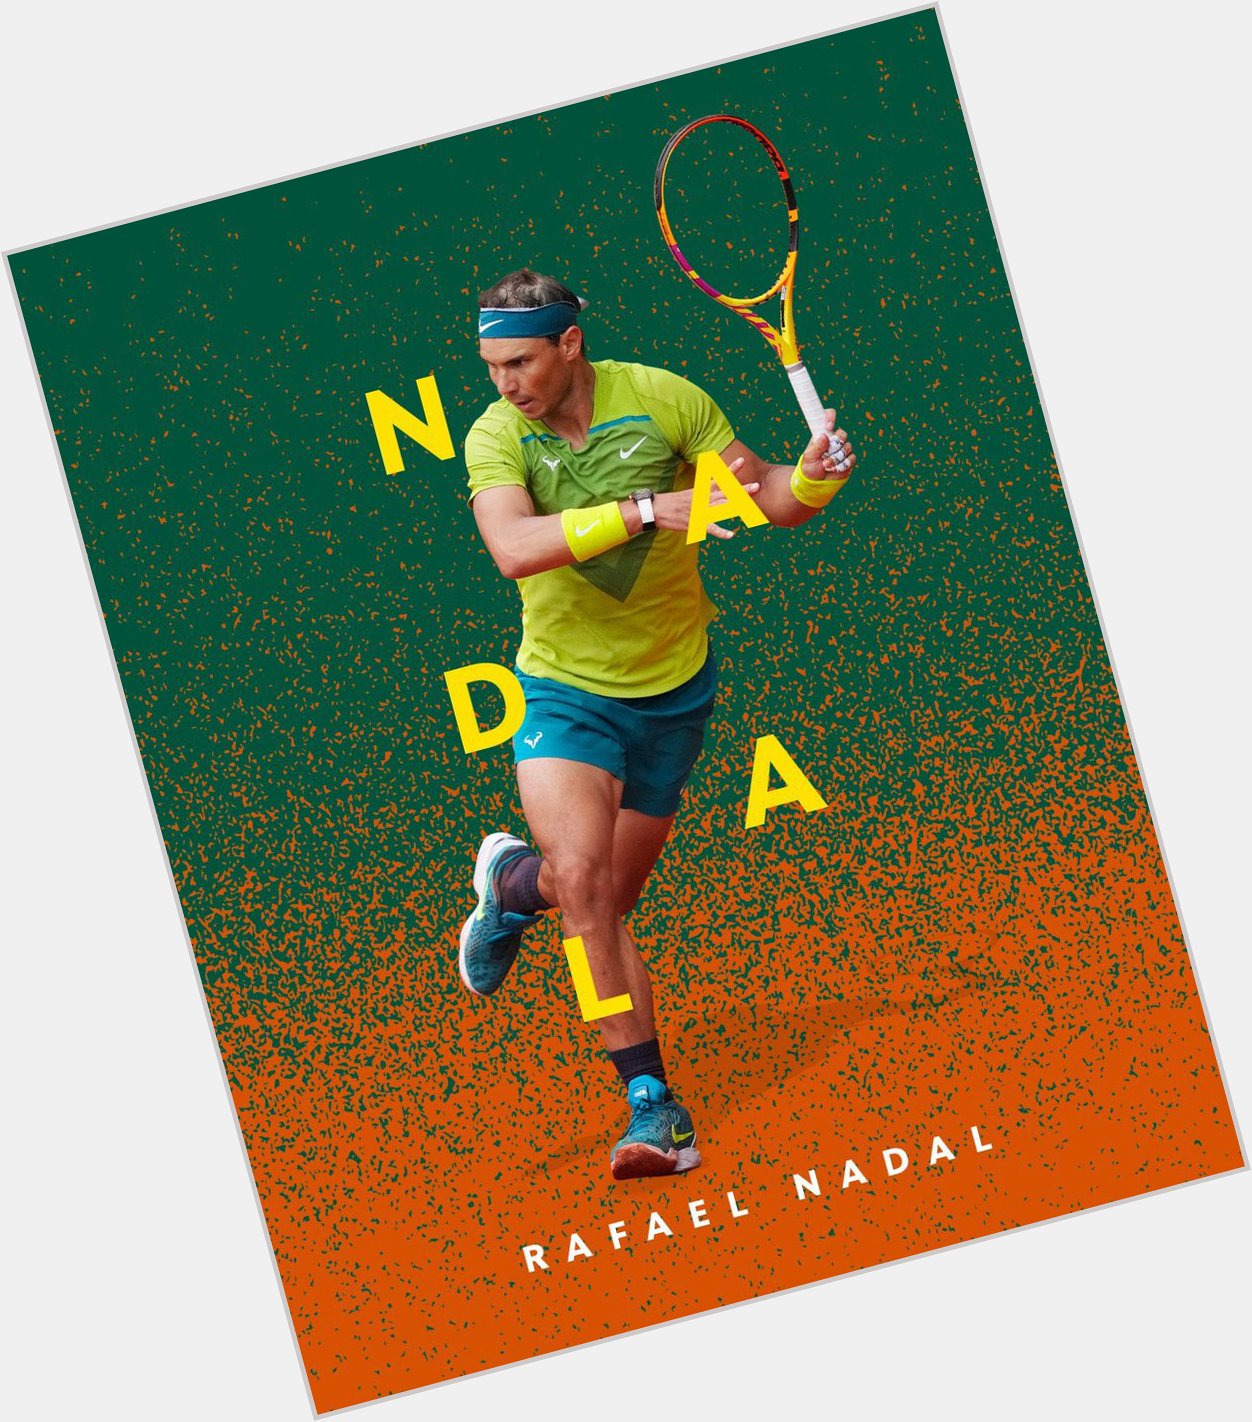 Unique. Impressive. Unforgettable. Rafael. Nadal. Happy birthday, champ! 